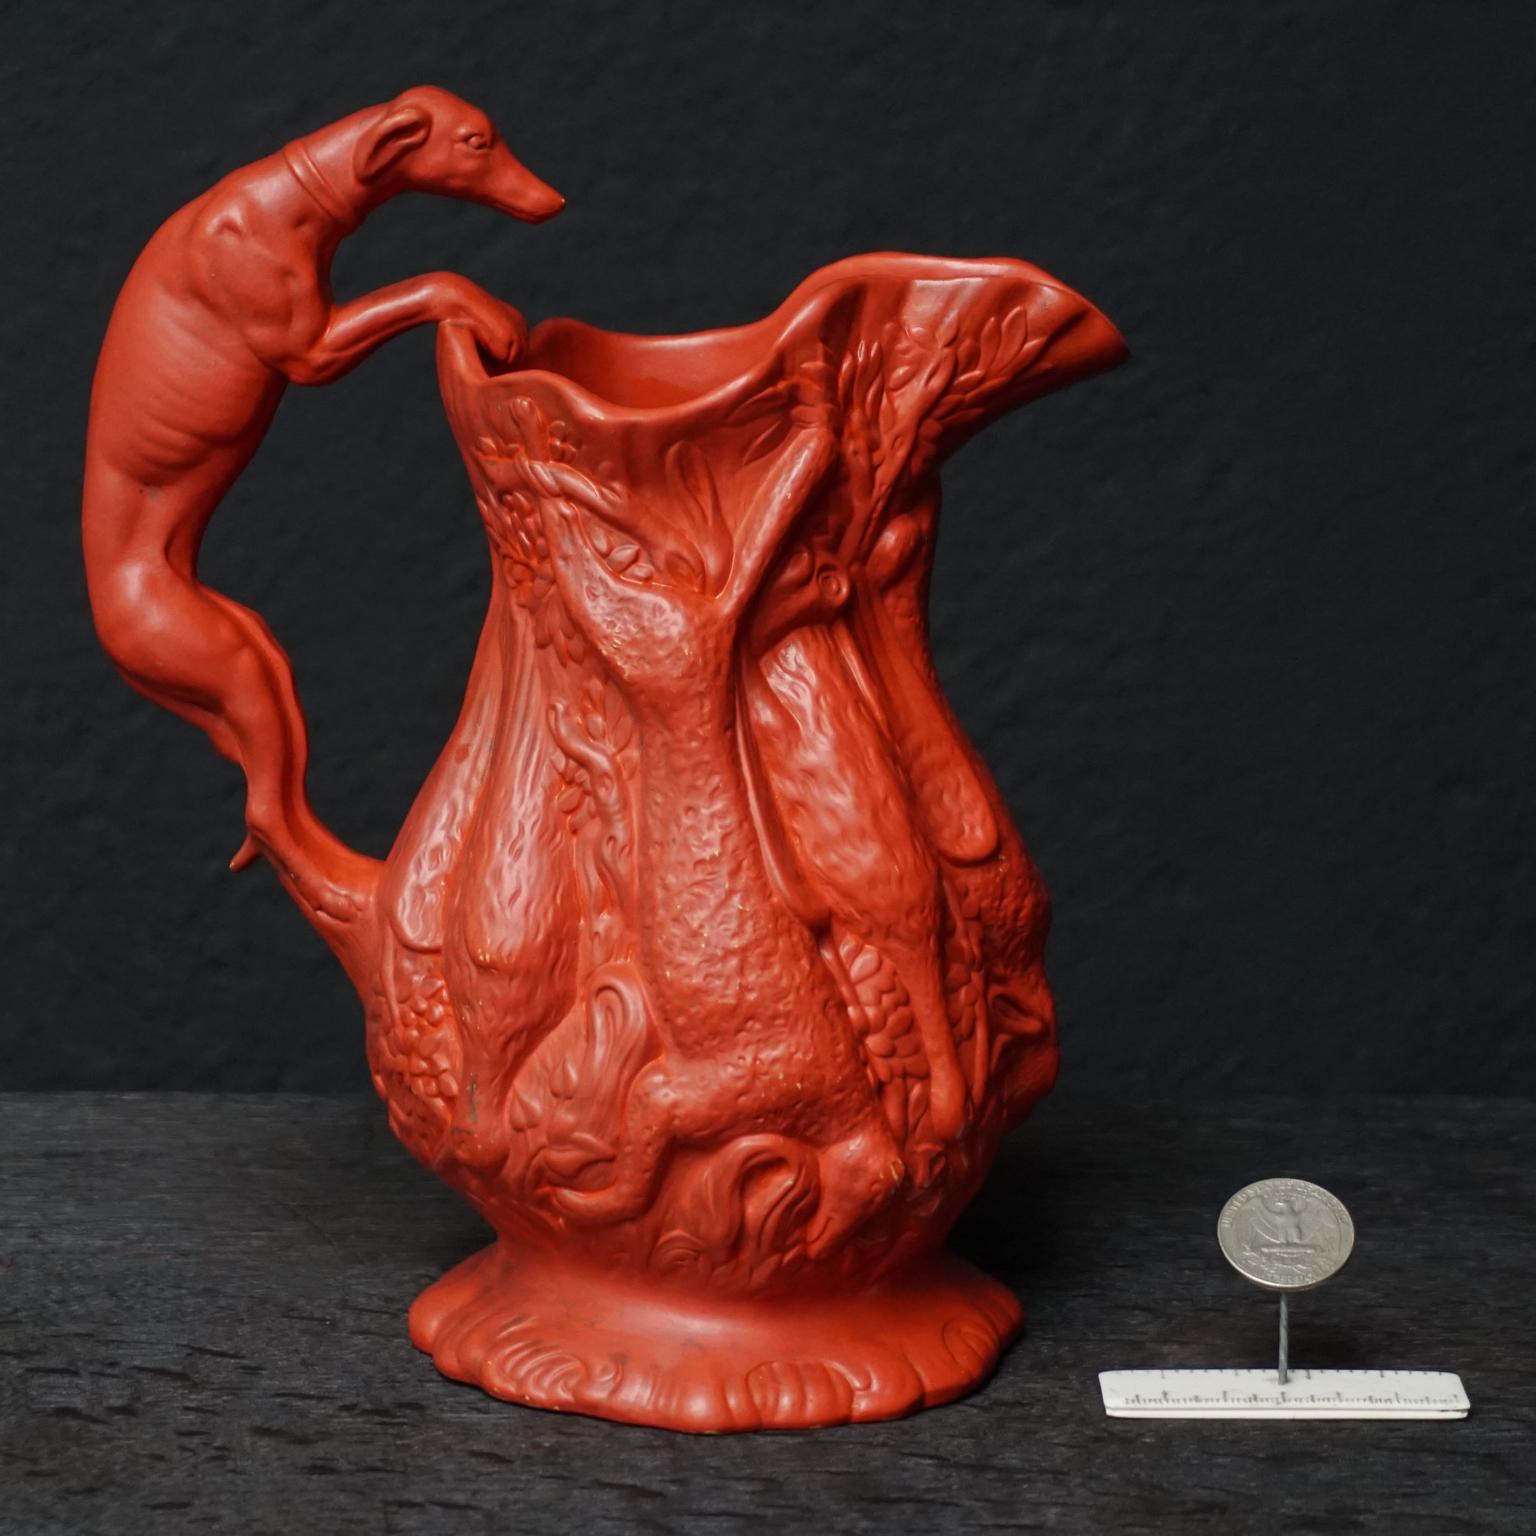 Pichet en terre cuite peint avec des détails étonnamment brillants, fabriqué par l'usine Ferdinand Gerbing Werke vers 1850-1860.

Très jolie cruche en terre cuite peinte en rouge-orange vif représentant un thème de chasse, avec un chien whippet